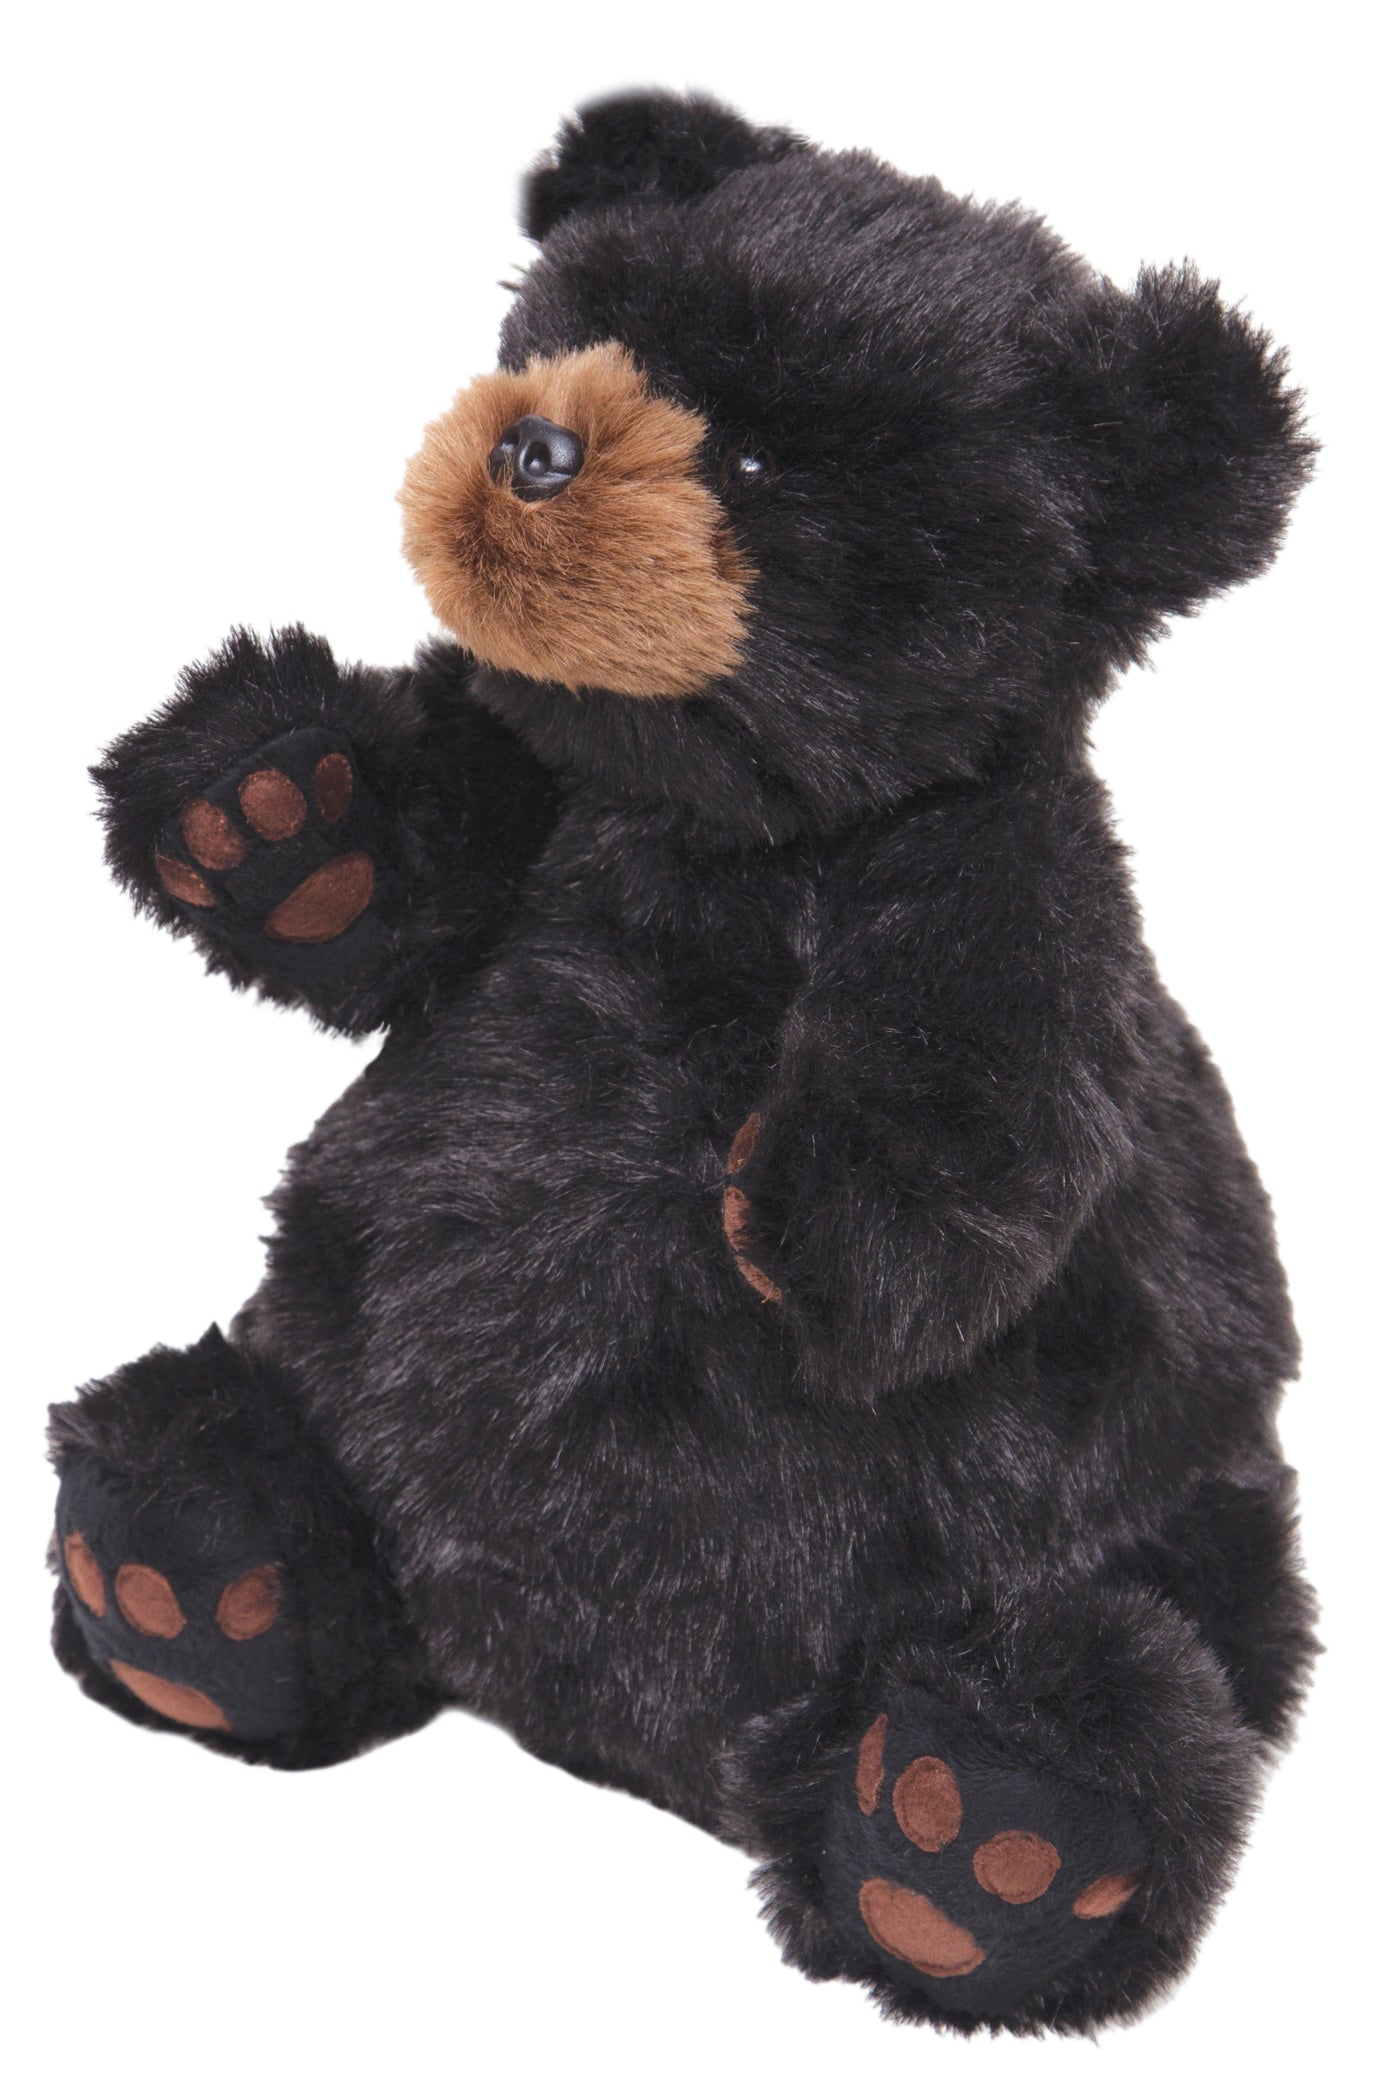 Year of the Teddy Bear Ben Teddy Bear